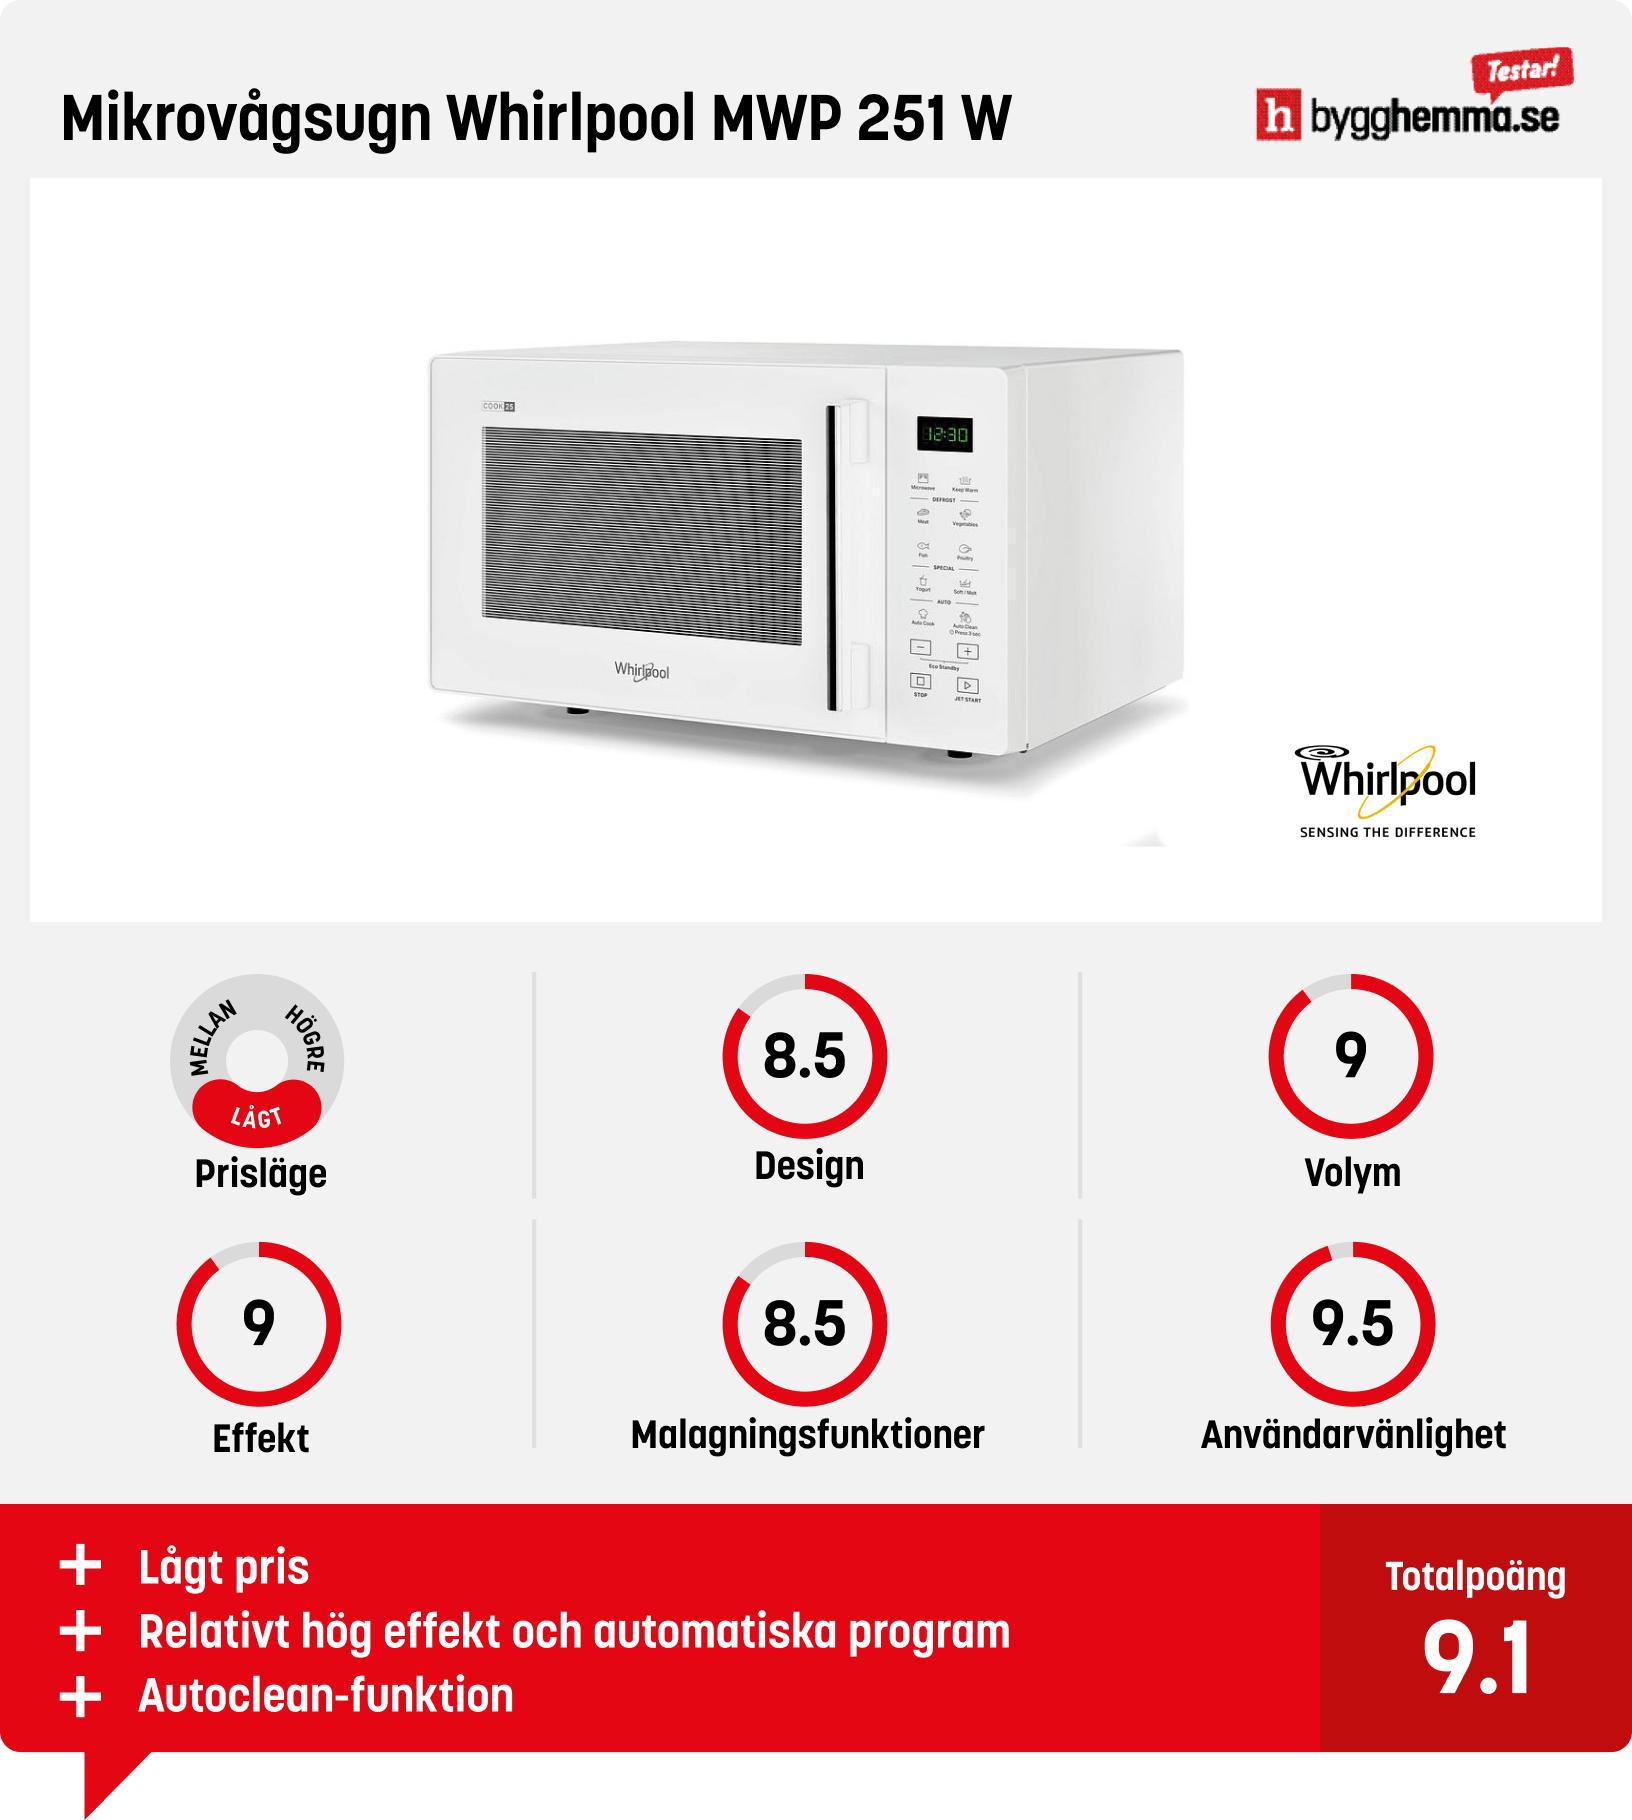 Mikrovågsugn bäst i test - Mikrovågsugn Whirlpool MWP 251 W